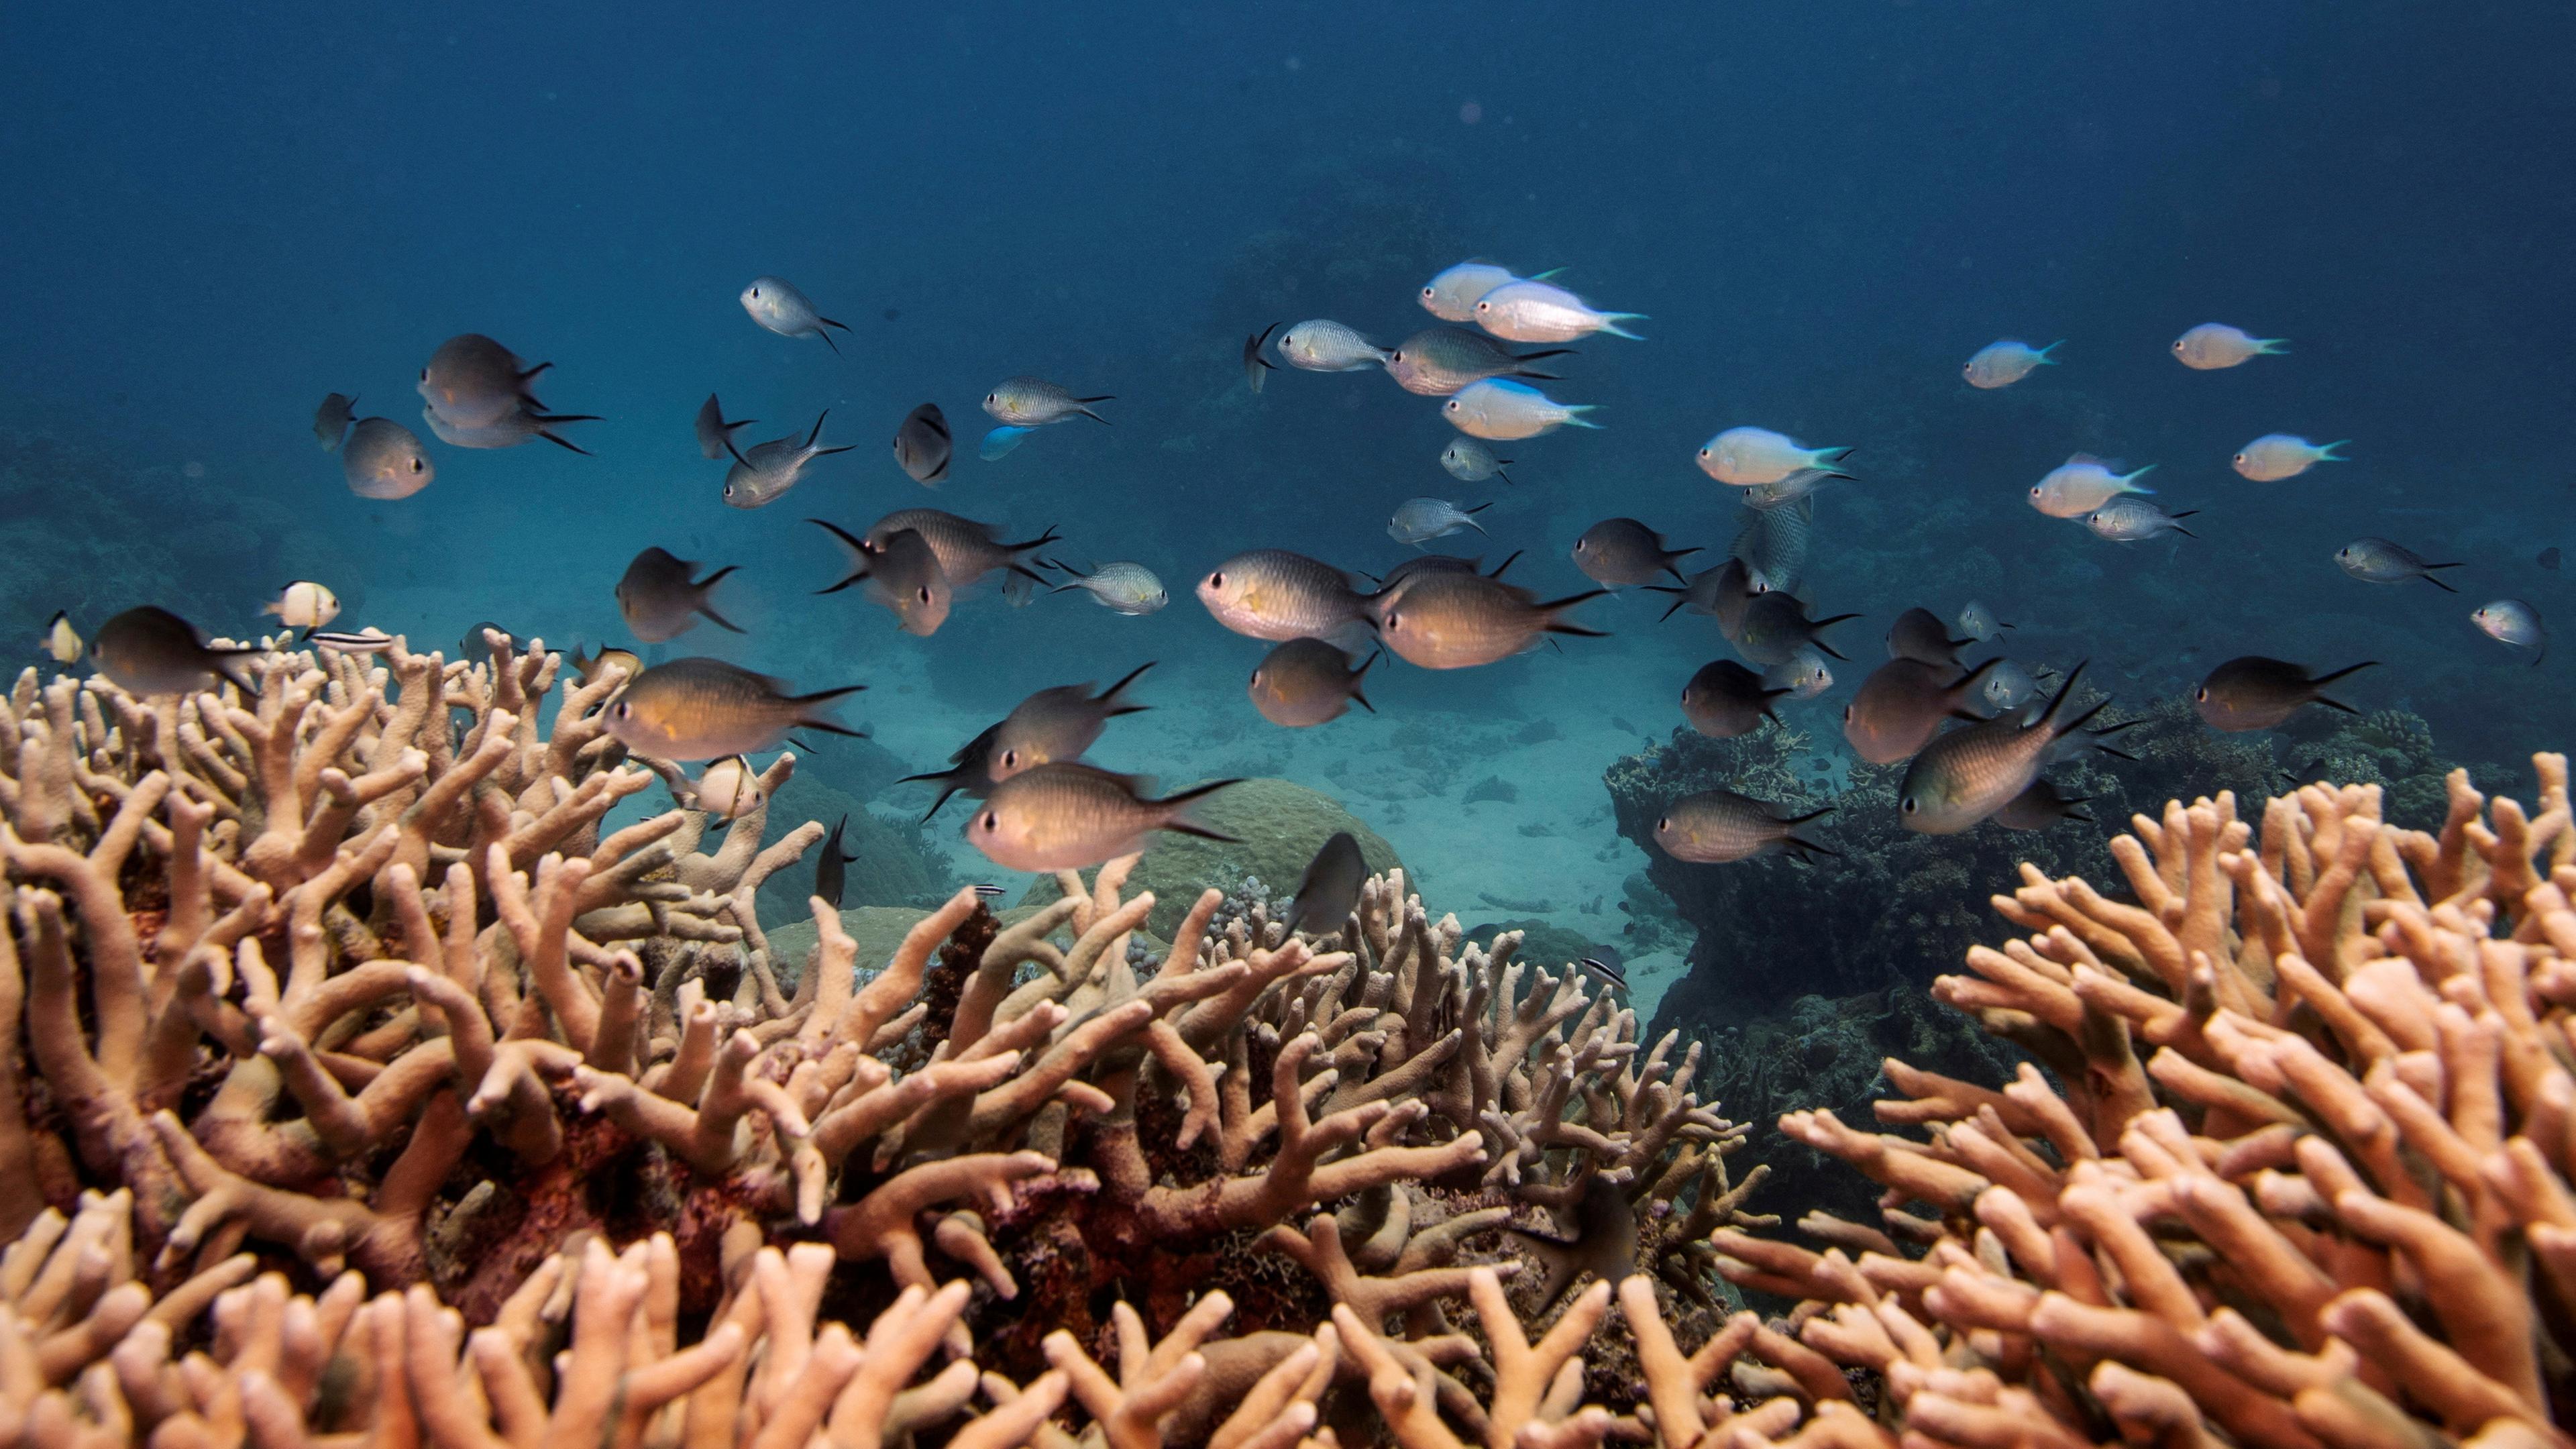  Korallen von Australien - Das Great Barrier Reef